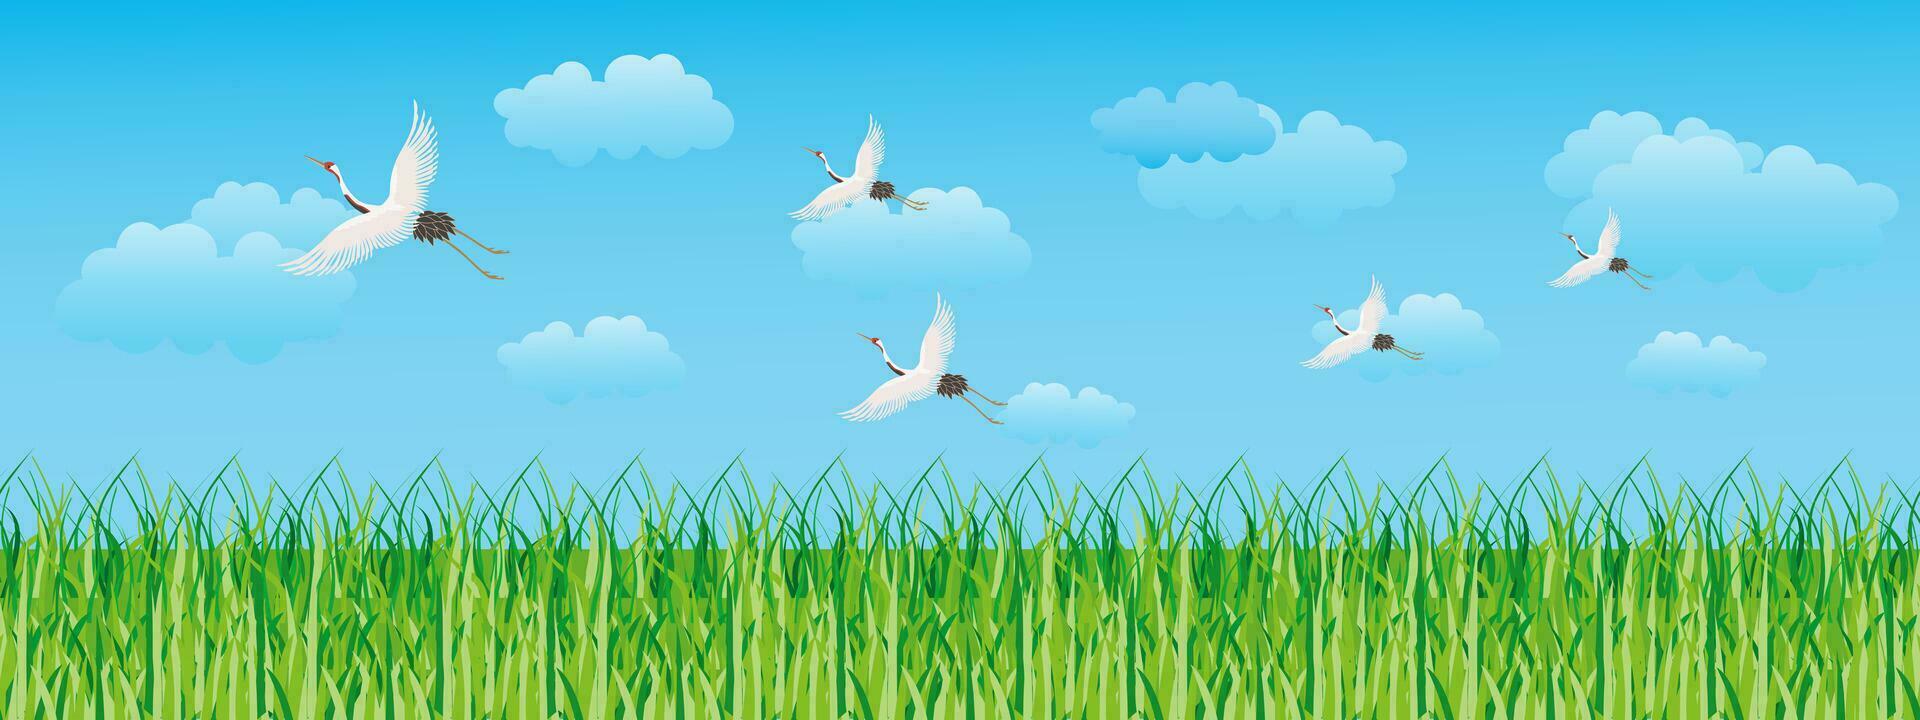 landschap, groen veld, bewolkt lucht en wit vliegend kranen. naadloos grens, landschap achtergrond, illustratie, vector